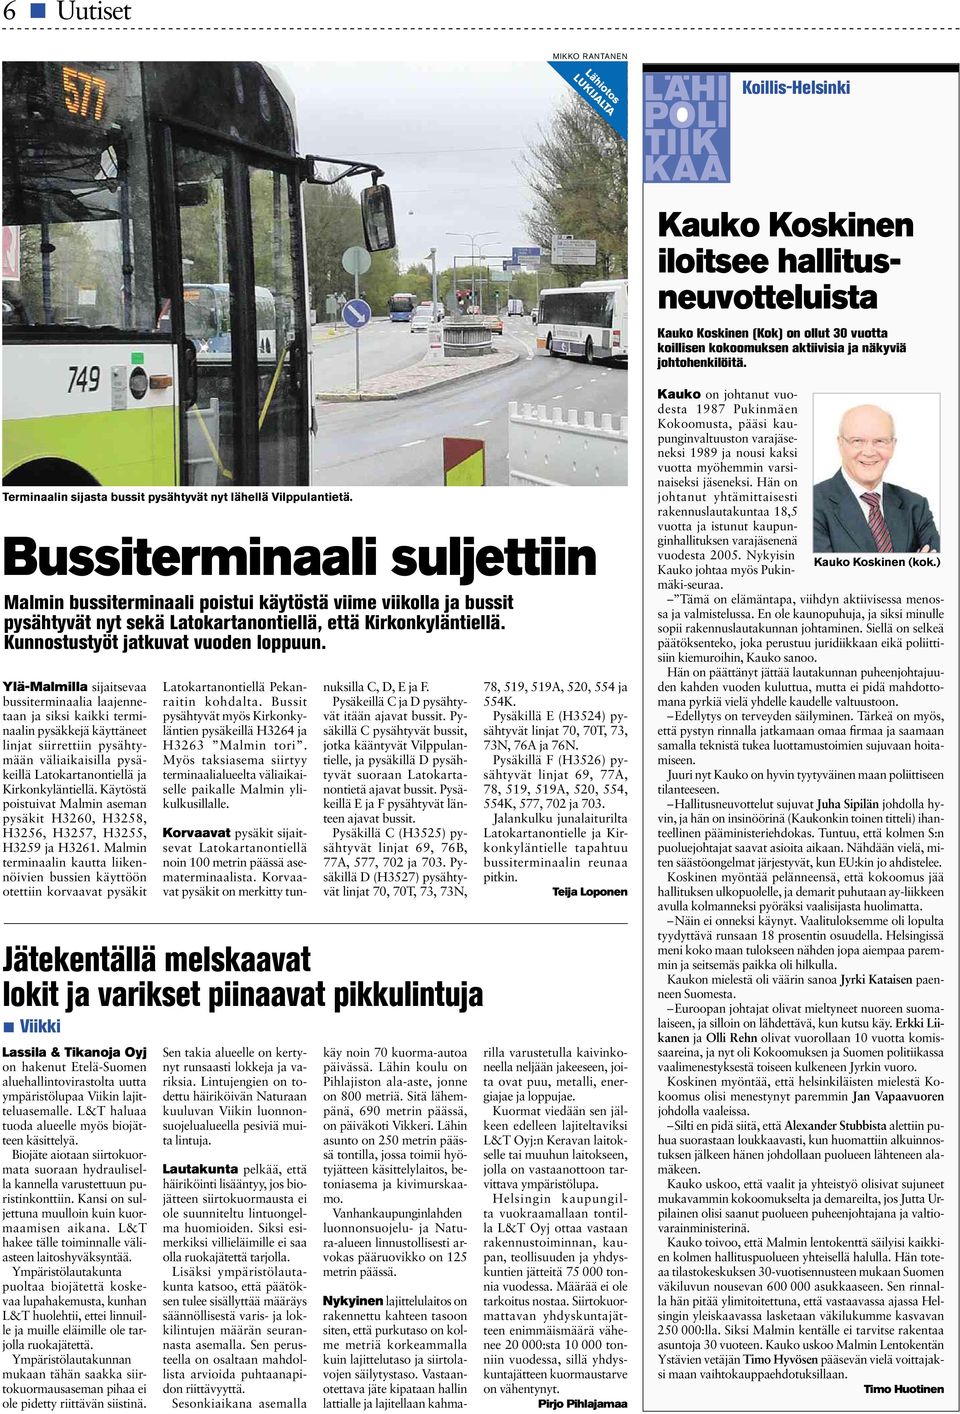 Bussiterminaali suljettiin Malmin bussiterminaali poistui käytöstä viime viikolla ja bussit pysähtyvät nyt sekä Latokartanontiellä, että Kirkonkyläntiellä. Kunnostustyöt jatkuvat vuoden loppuun.